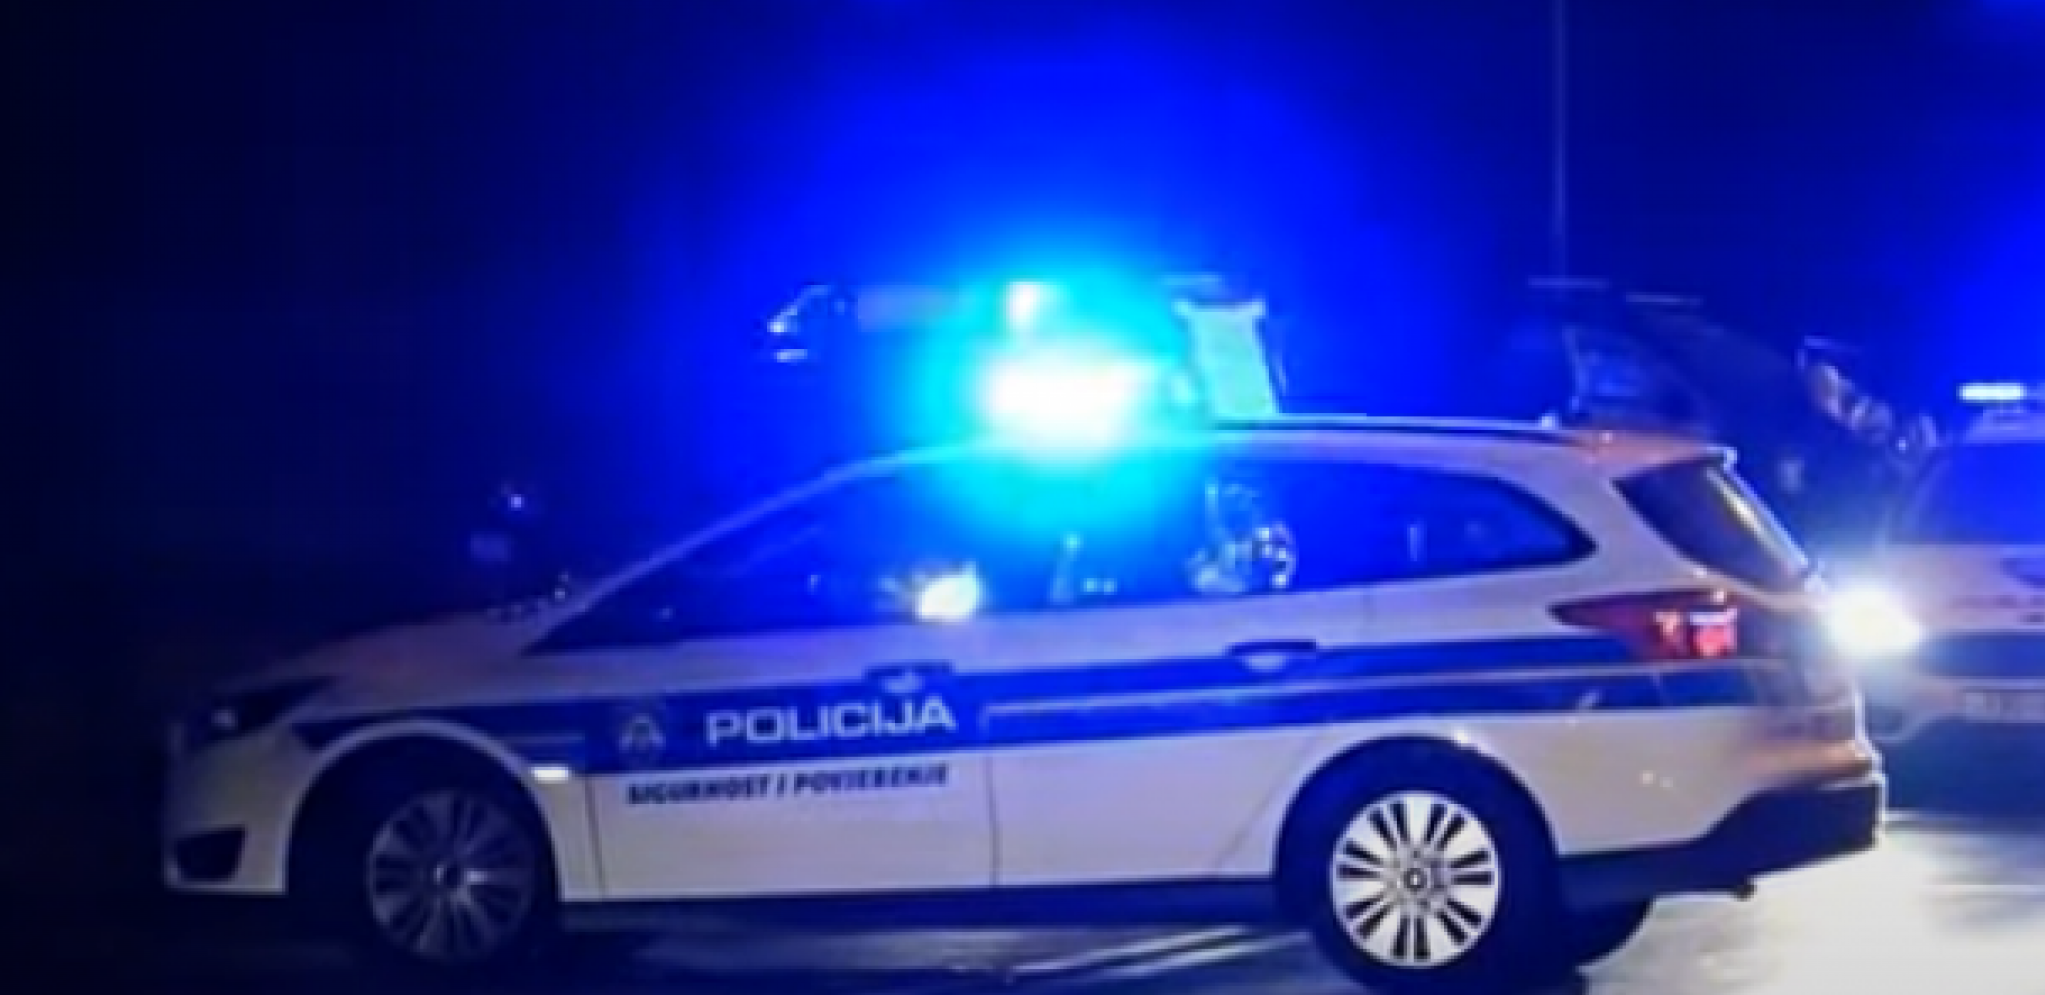 "NA SREĆU, NIJE AKTIVIRAO BOMBU!" Policajci uhapsili mortus pijanog vozača rizikujući svoje živote